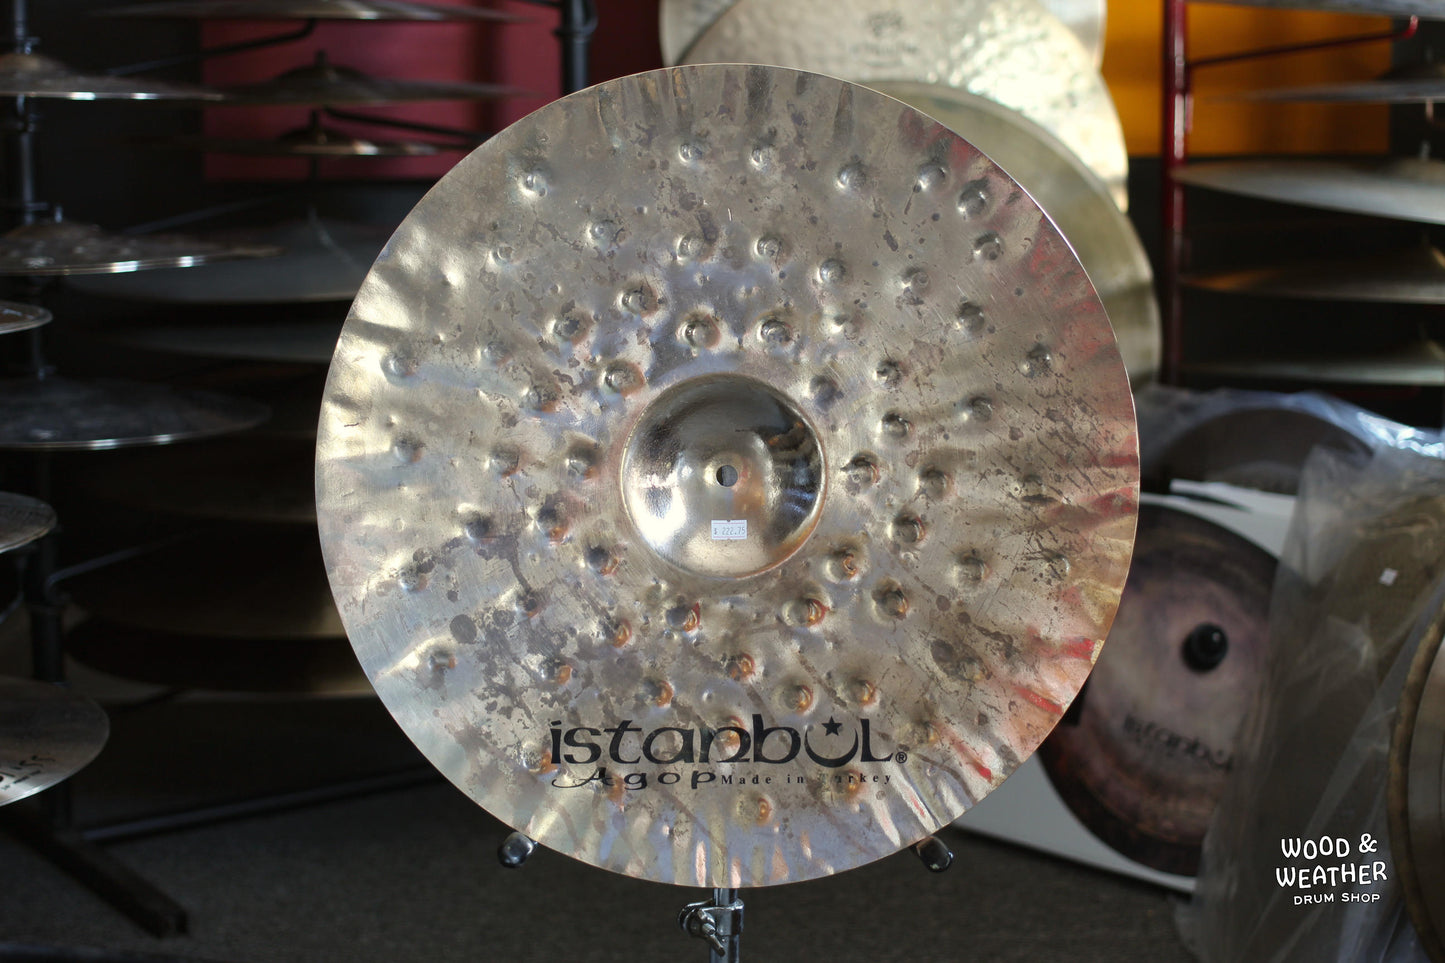 Istanbul Agop 19" Xist Dry Dark Brilliant Crash Cymbal